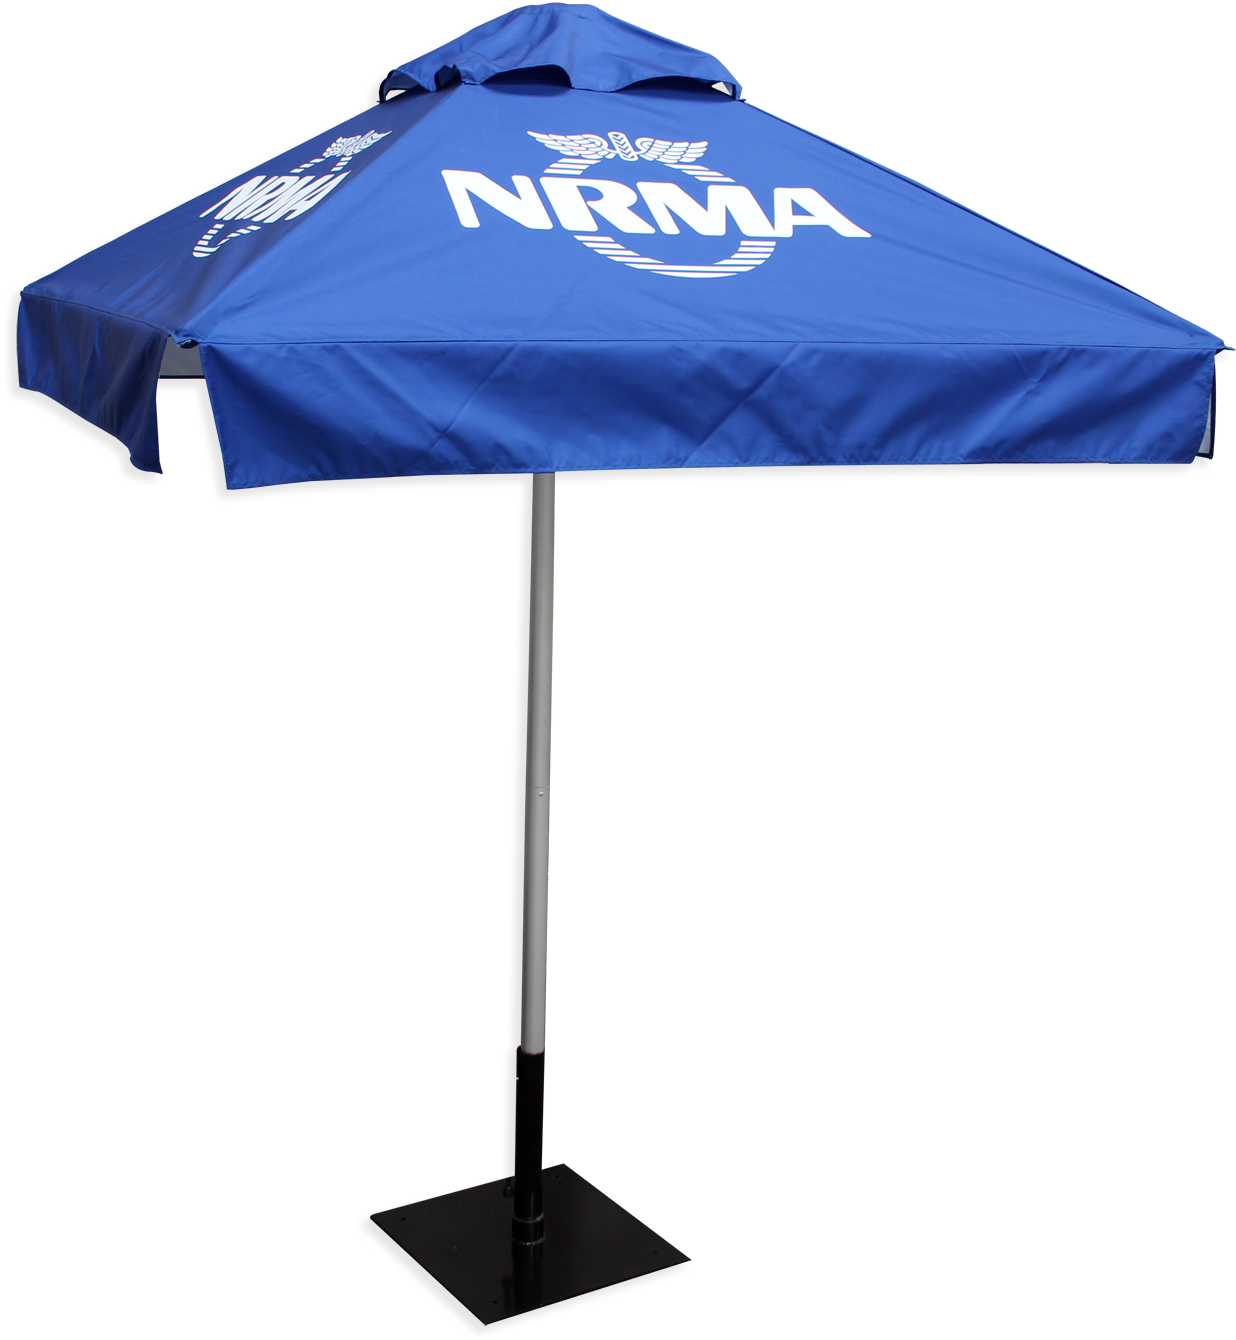 Clip Umbrellas Shade - Cafe Umbrella - Png Download (1500x1357), Png Download